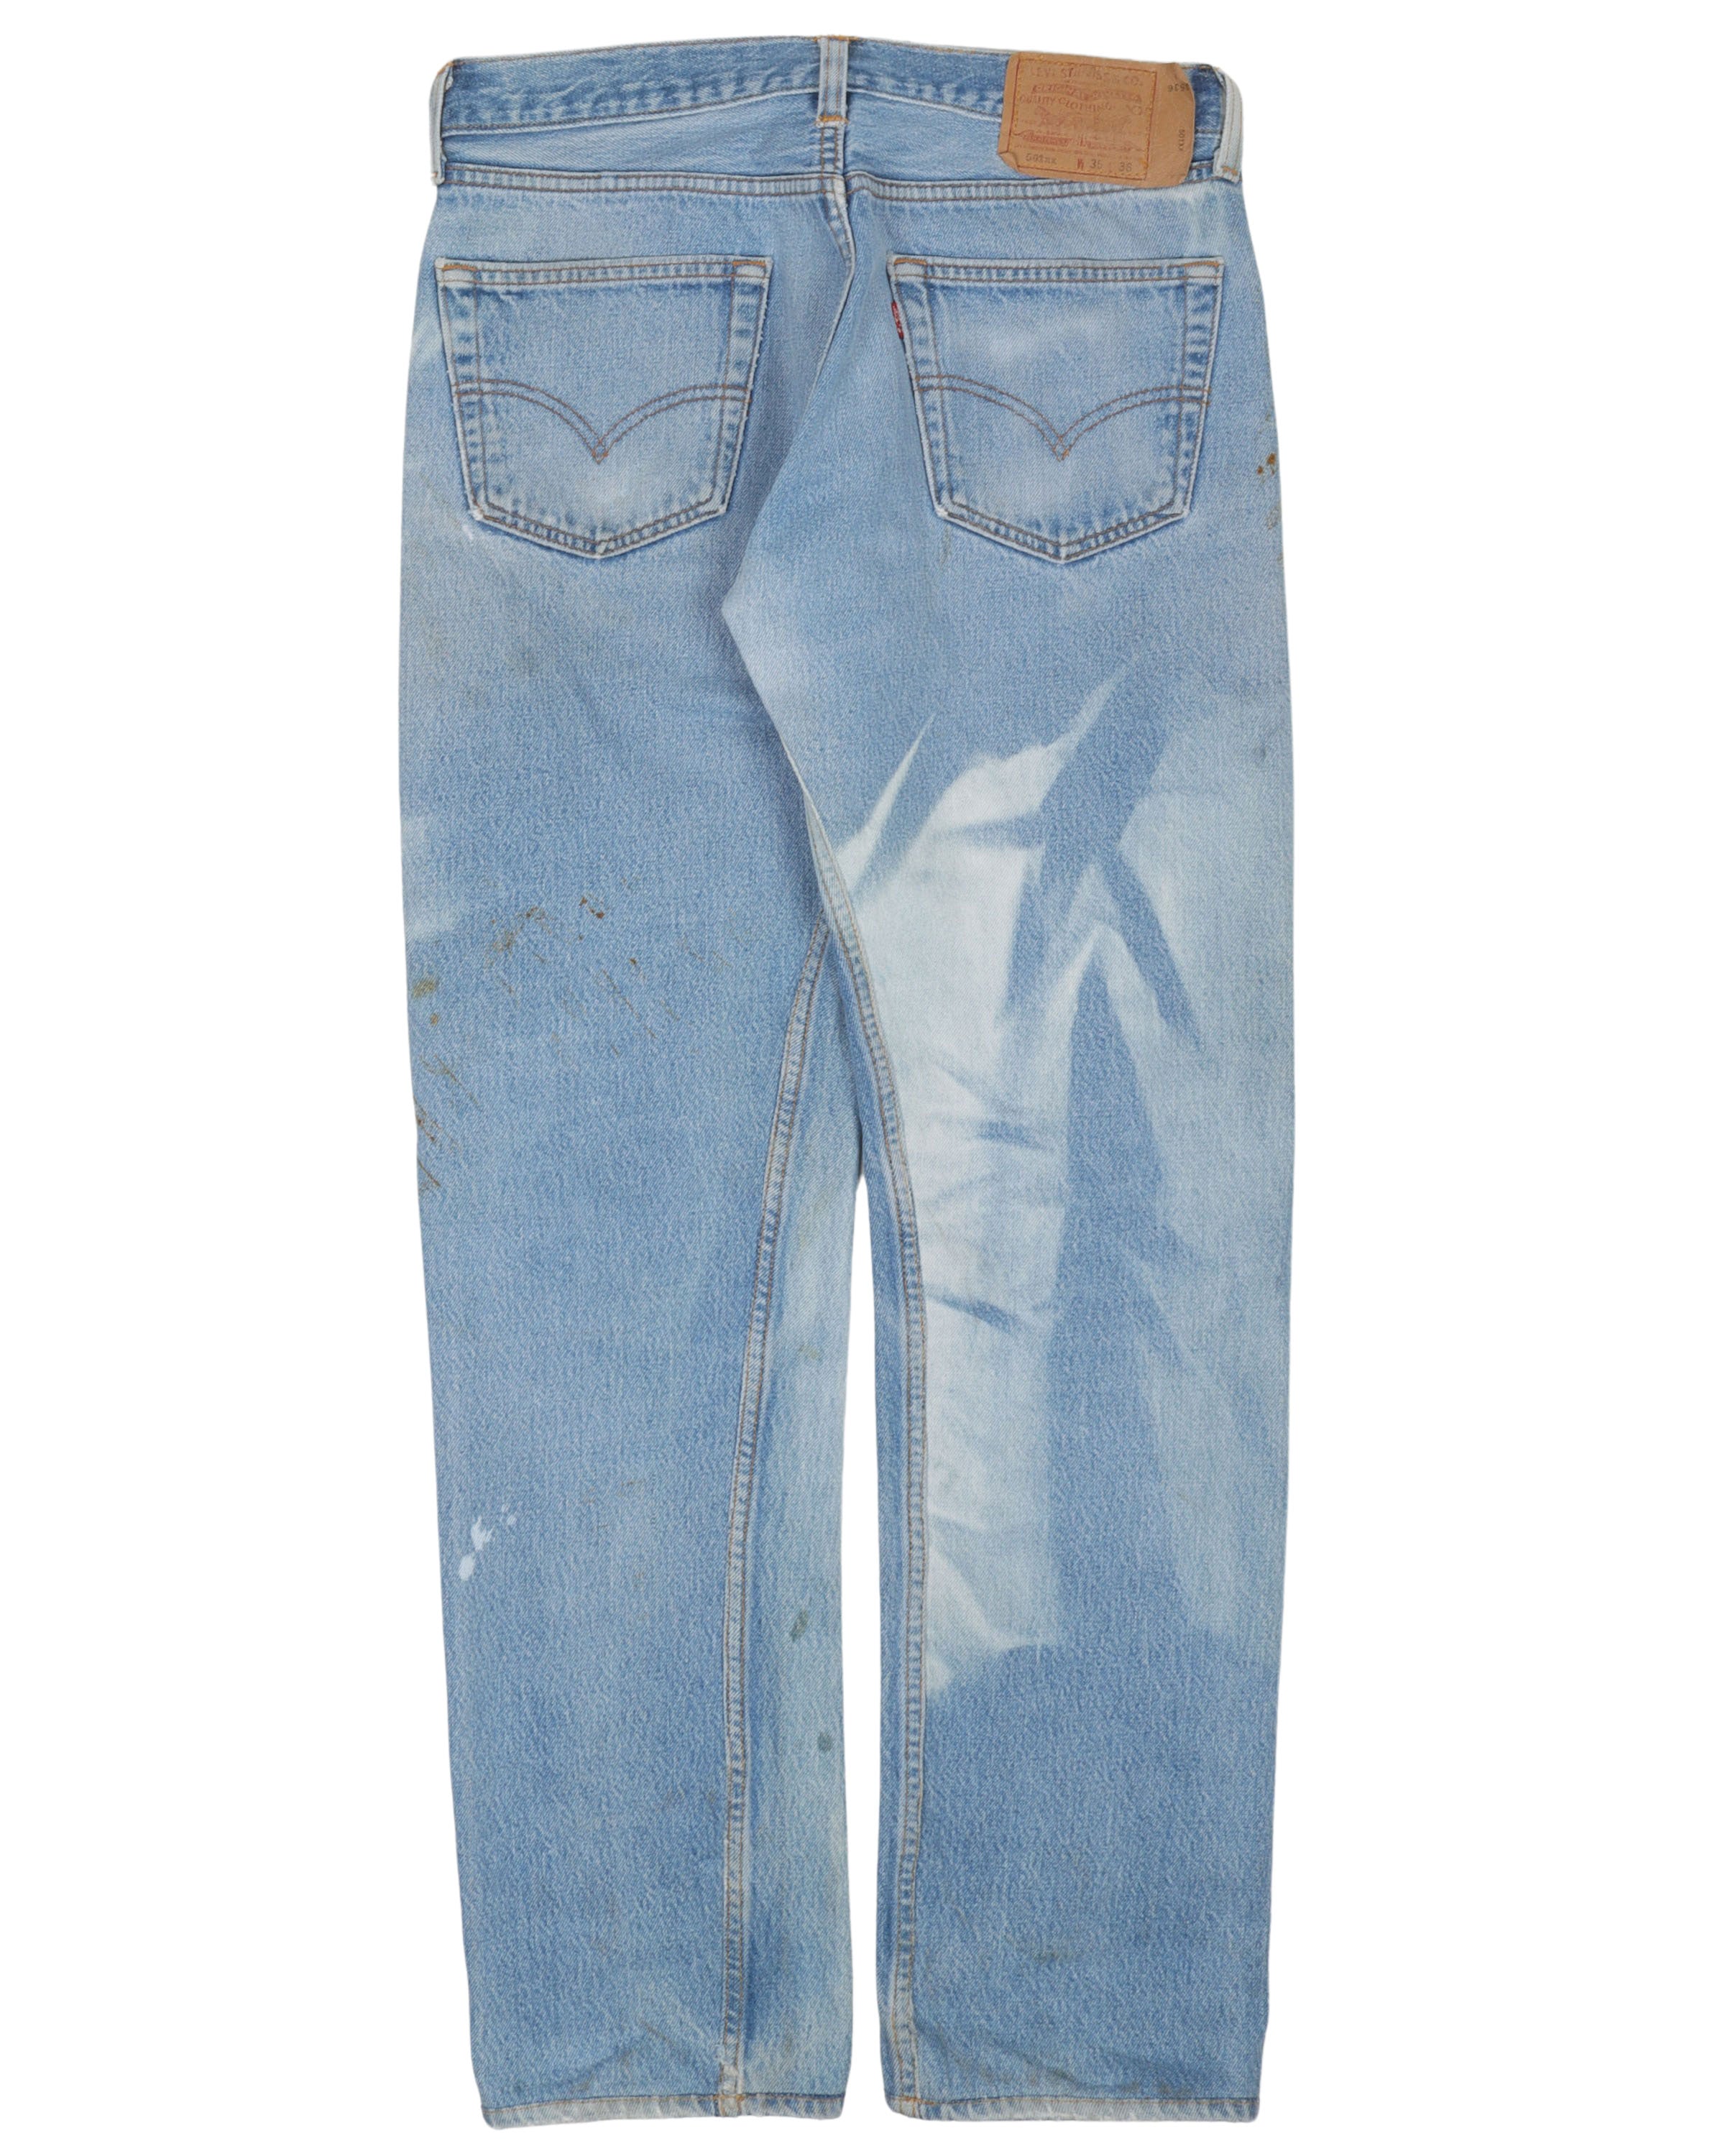 Fade Levi 501 Jeans